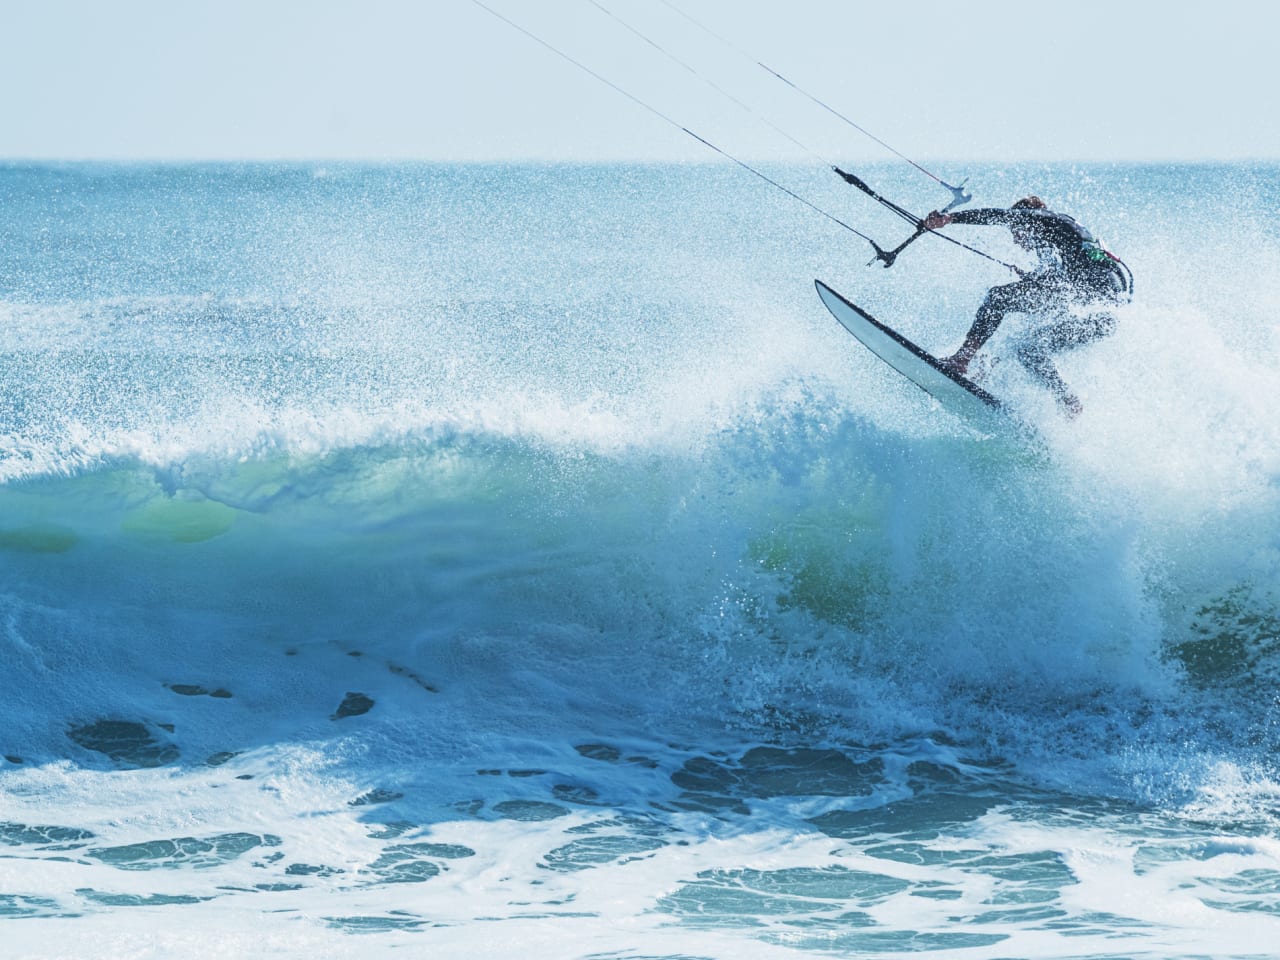 Kitesurfer springt über eine schäumende Welle © iStock.com/shaunl